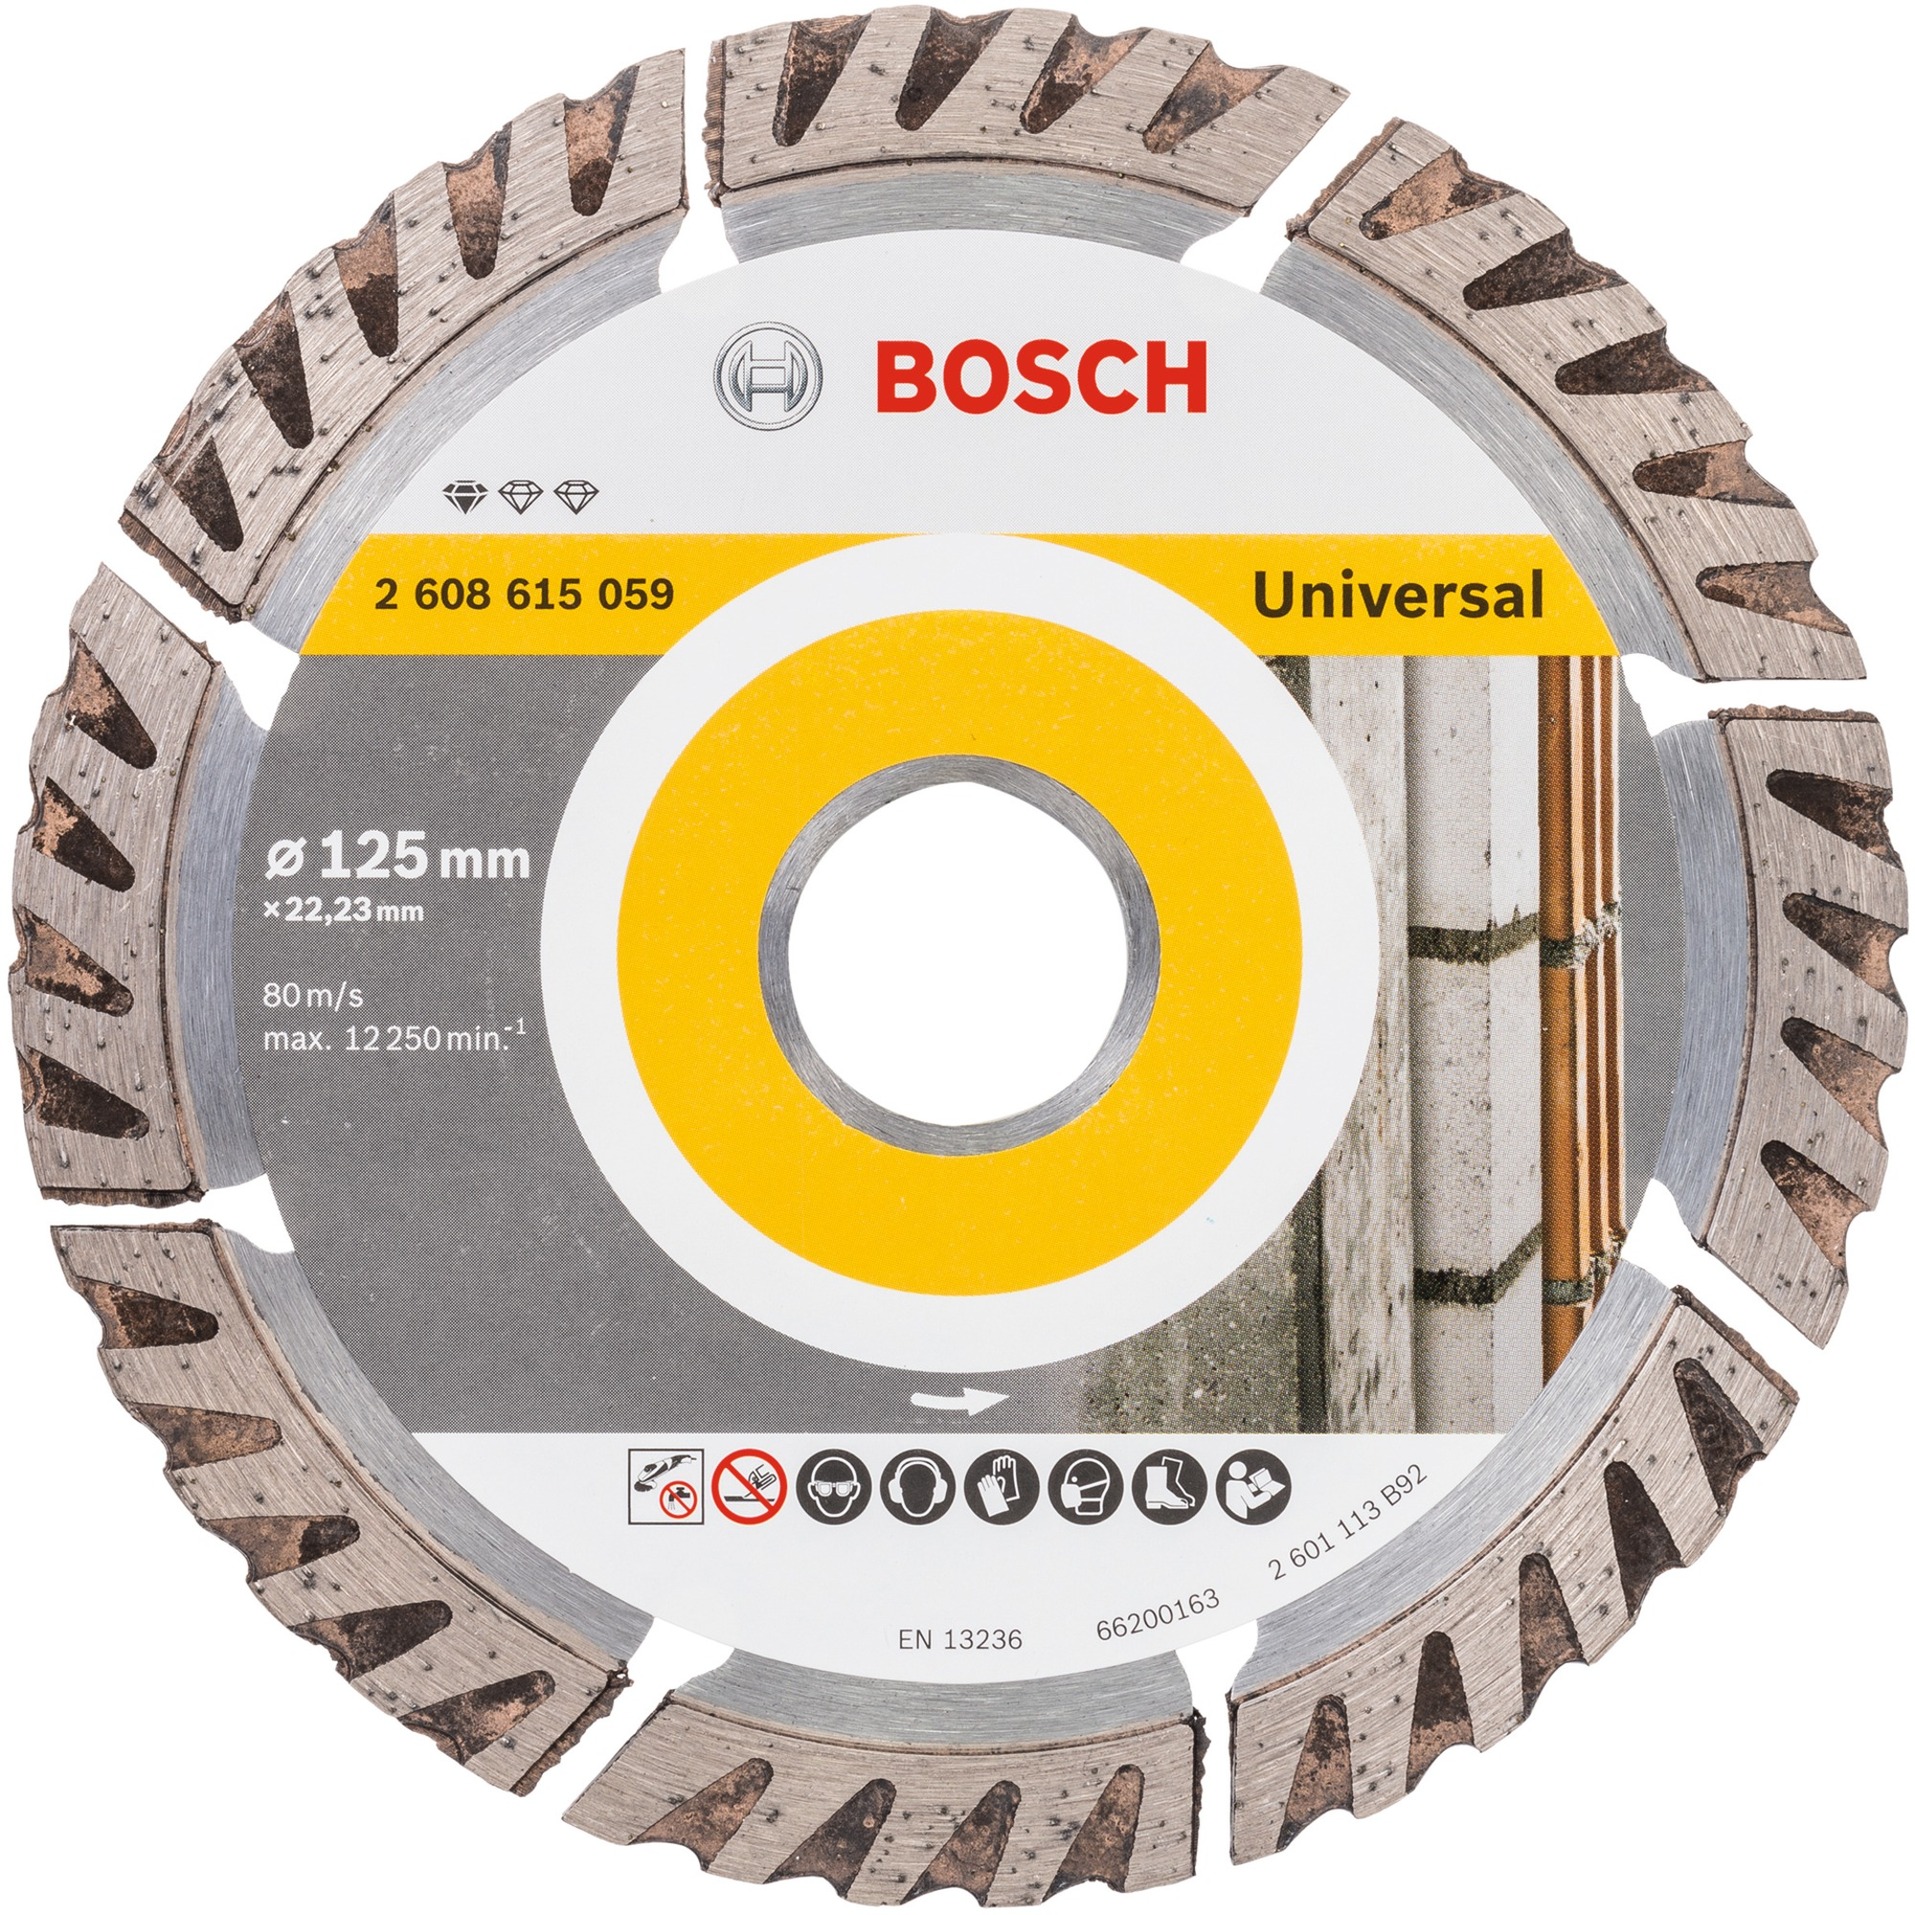 Diamanttrennscheibe Standard for Universal, Ø 125mm von Bosch